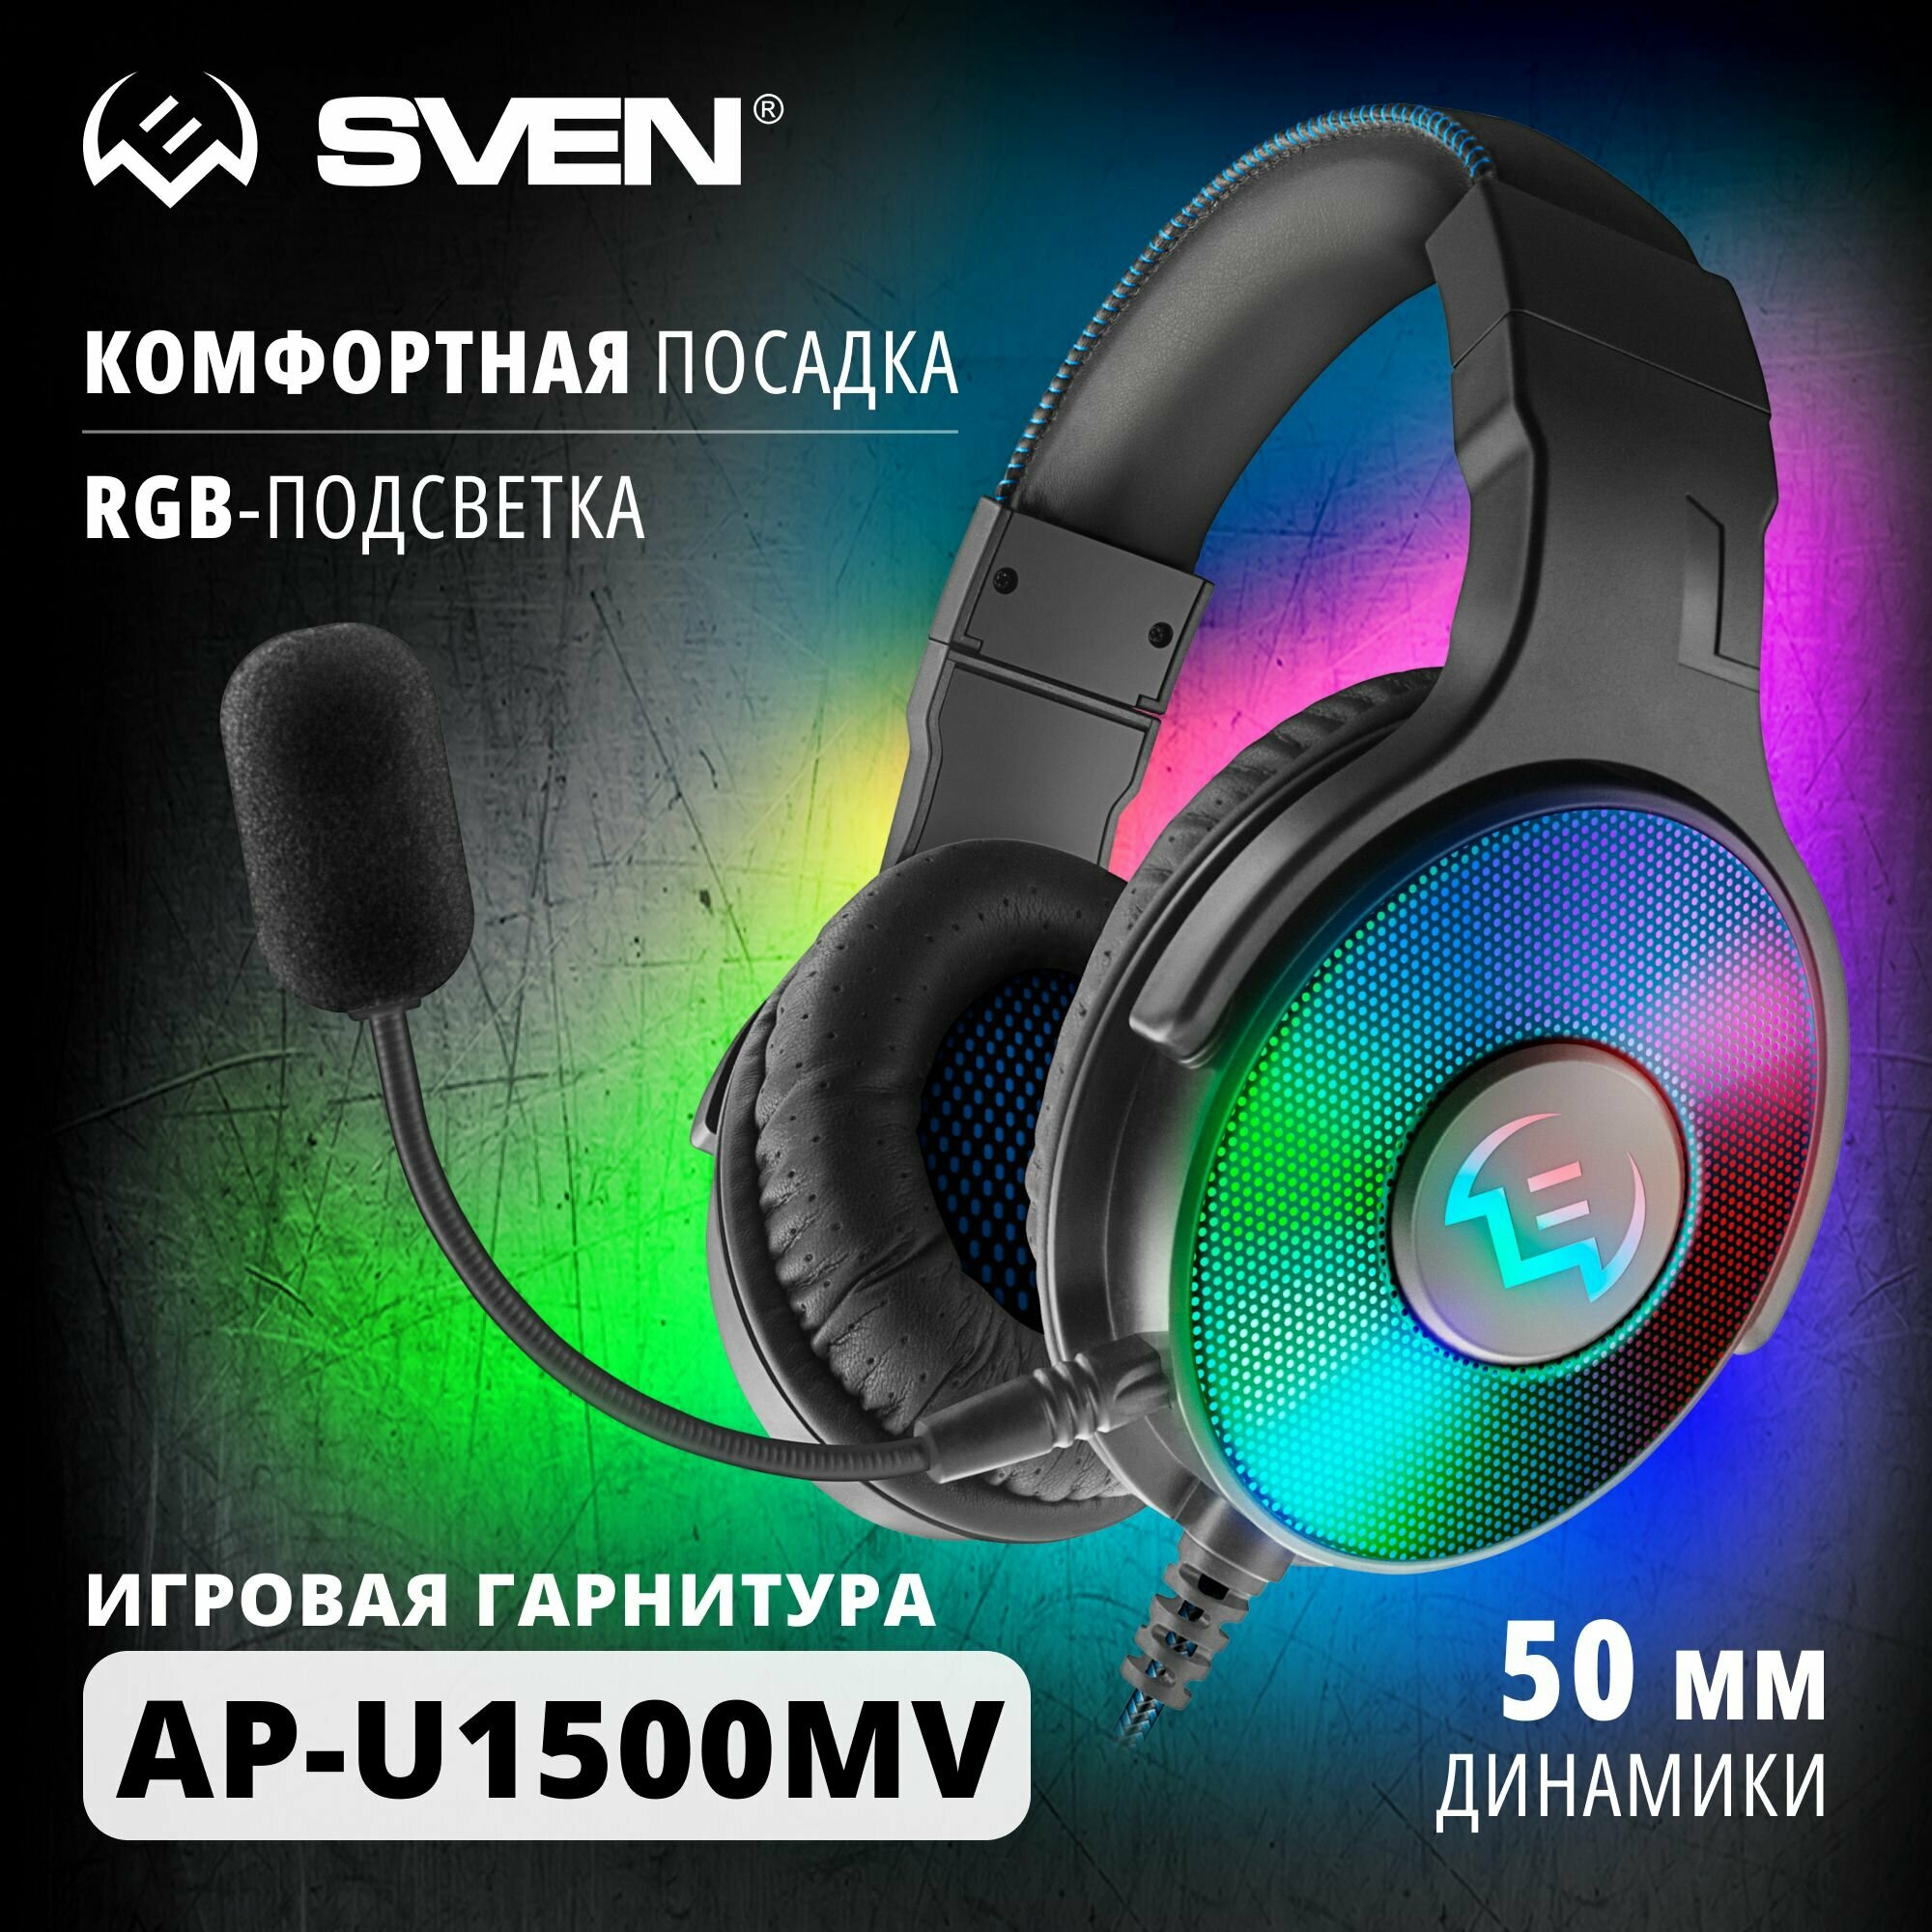 Игровые наушники с микрофоном SVEN AP-U1500MV, черный цвет, подключение по USB, RGB-LED подсветка, объемный 7.1 звук.